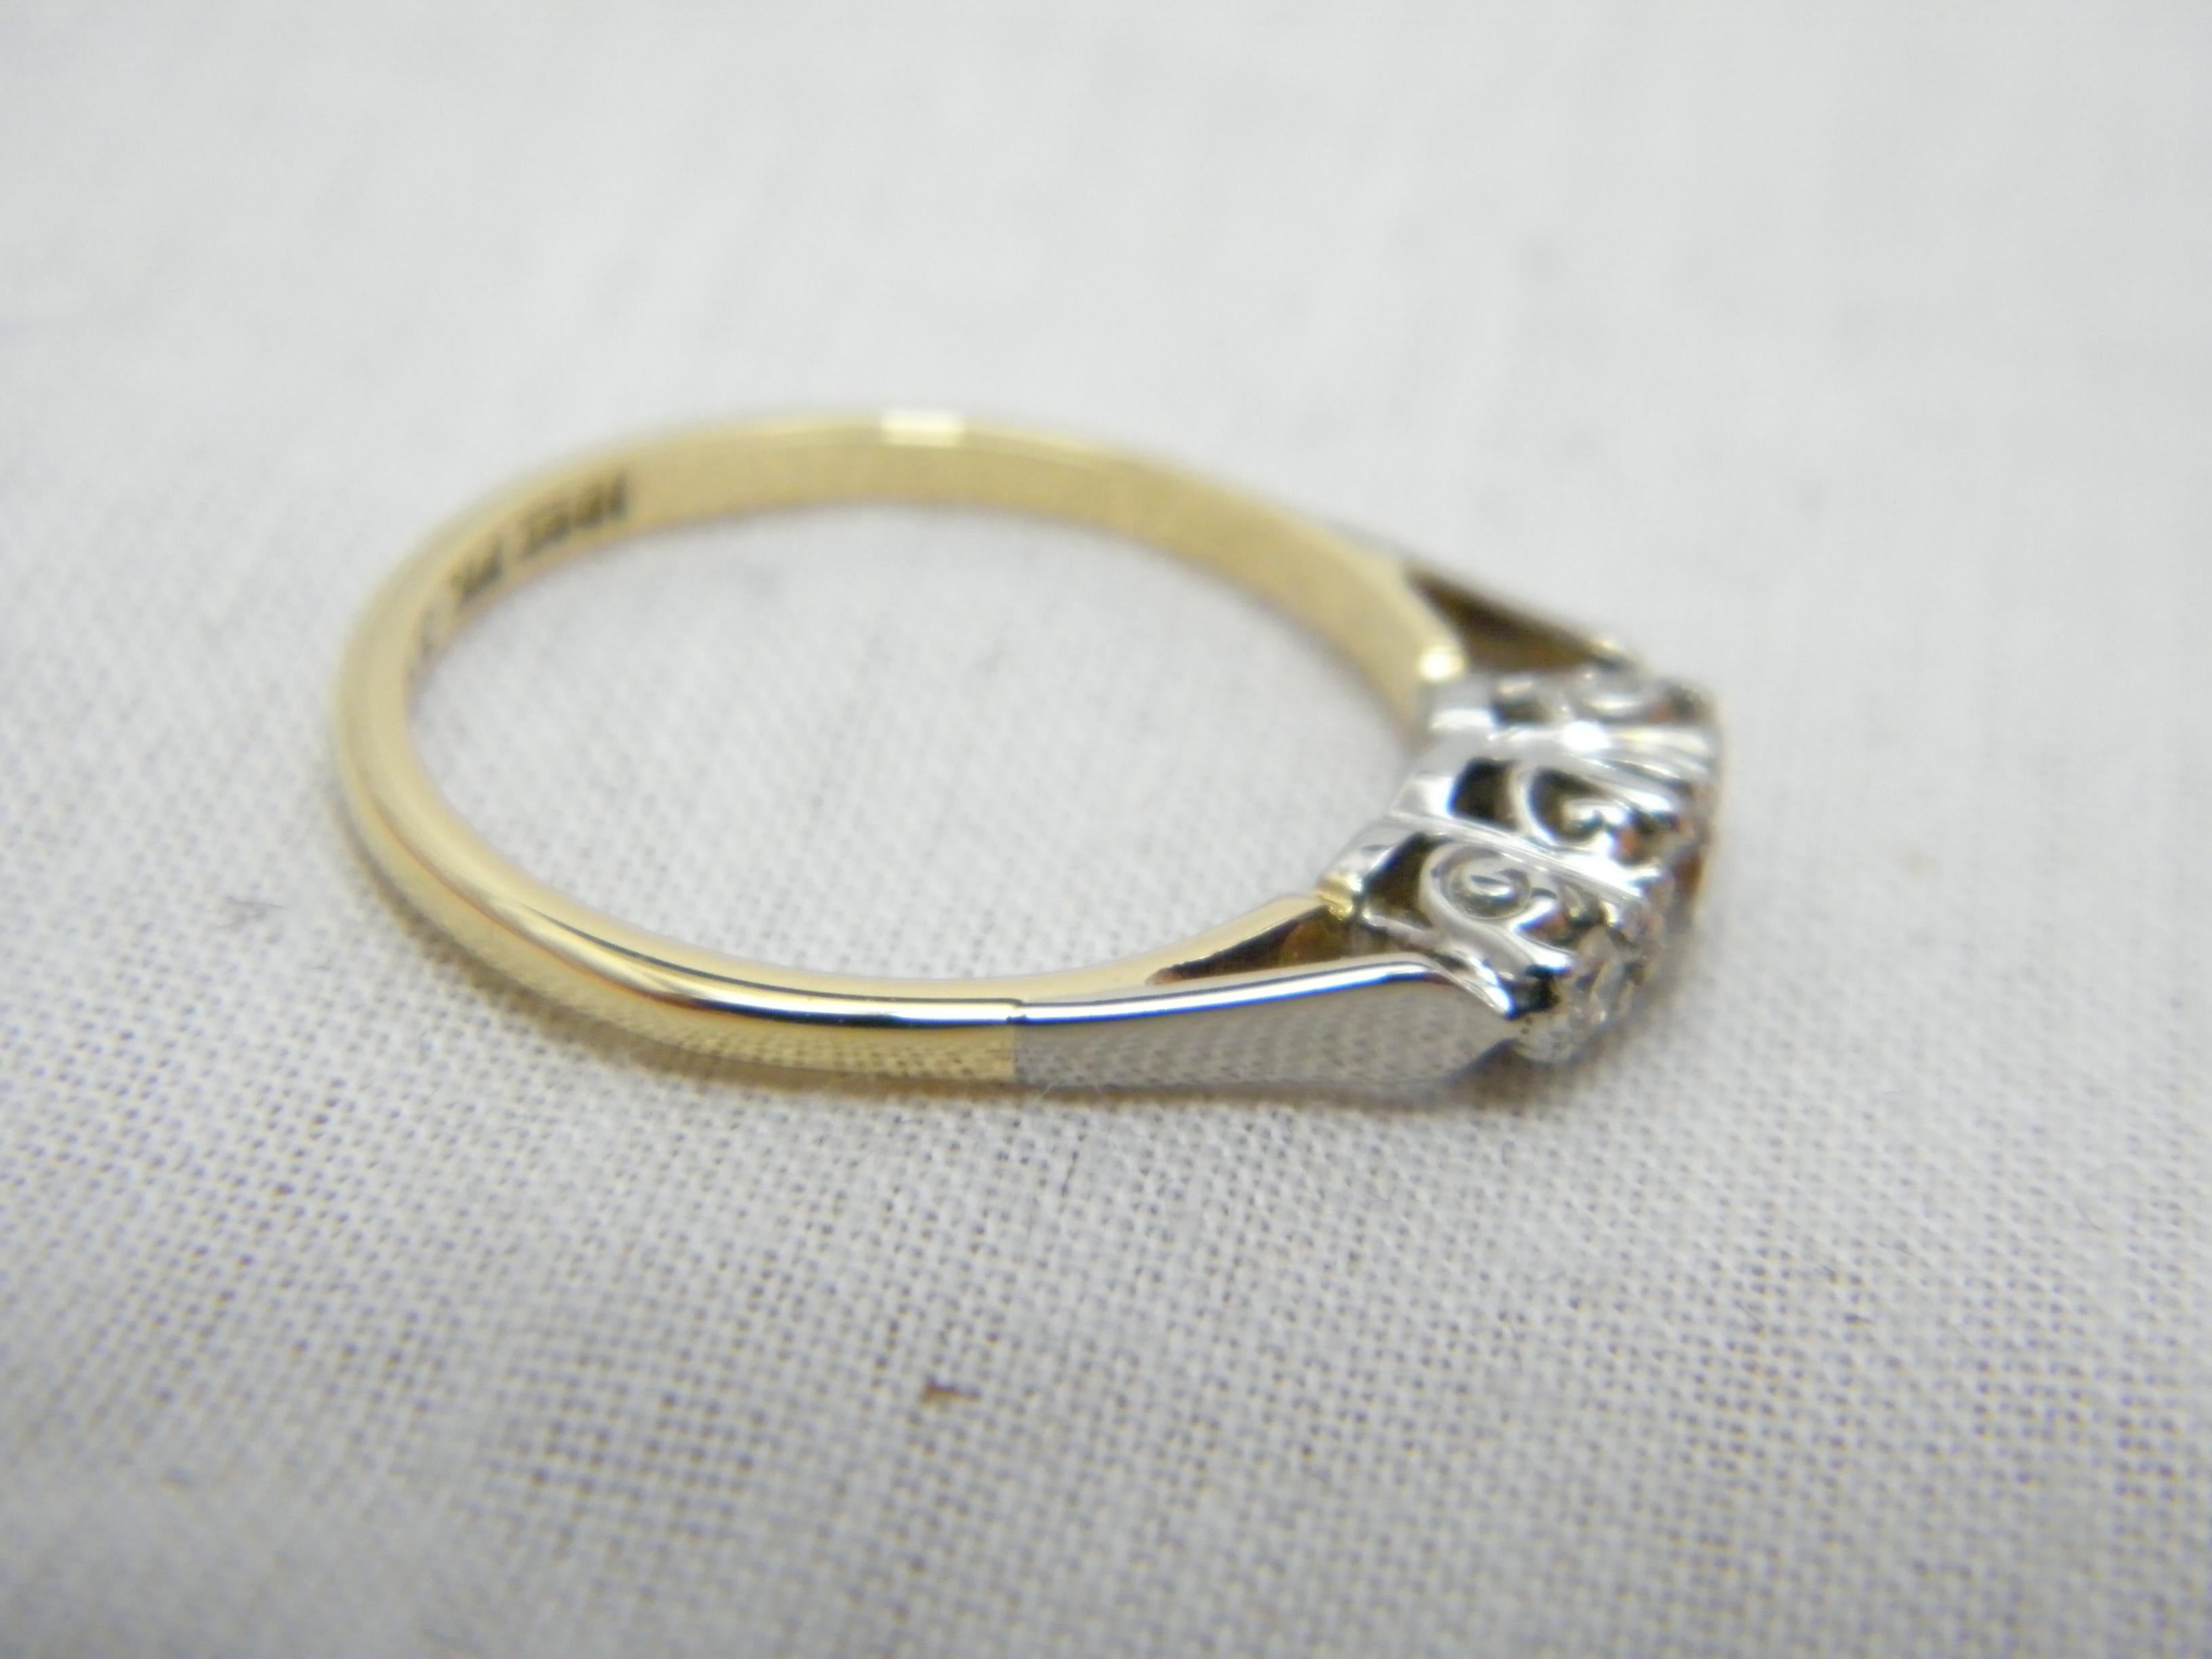 Victorian Antique 18ct Gold Platinum Diamond Trilogy Engagement Ring Size L 6 750 950 For Sale